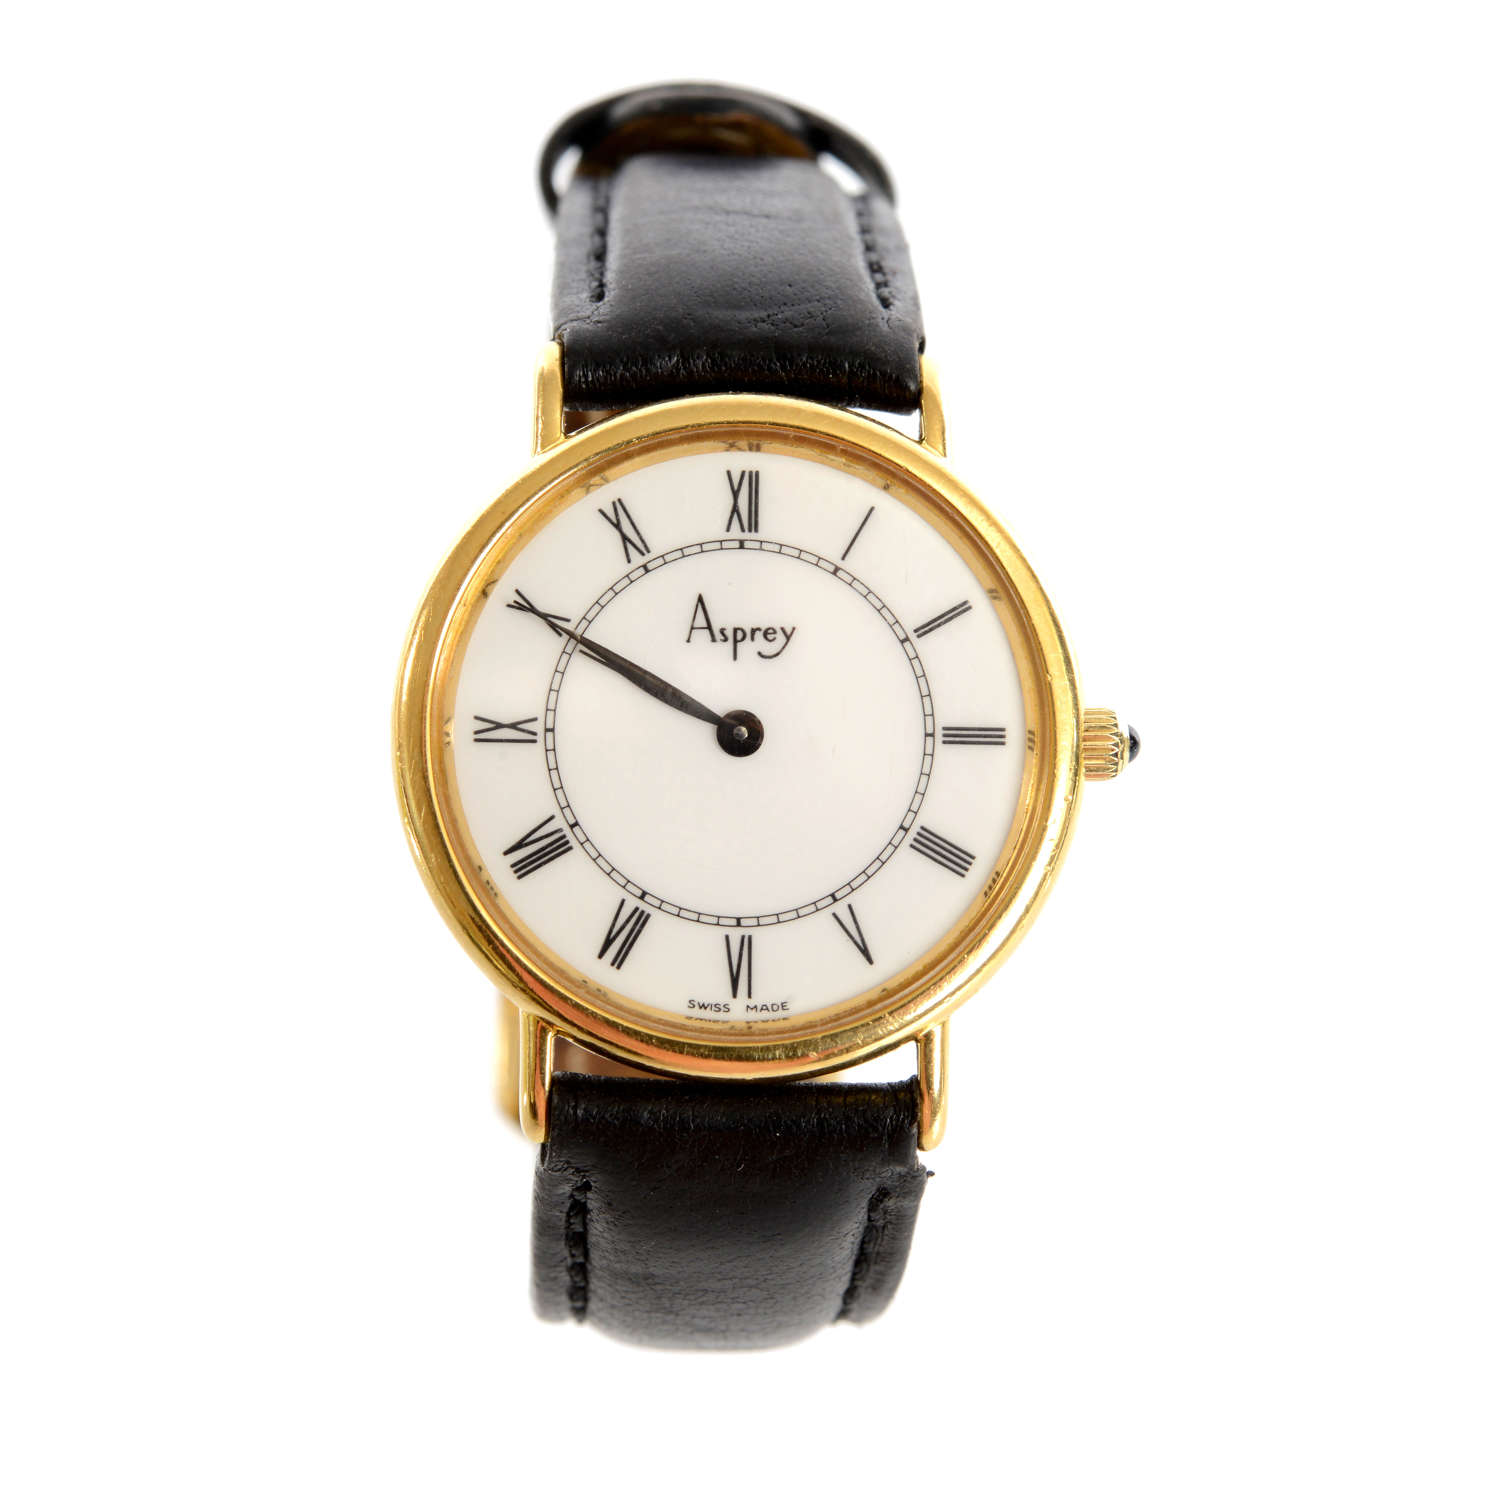 Asprey. A Lady’s 18K Gold Quartz Wristwatch